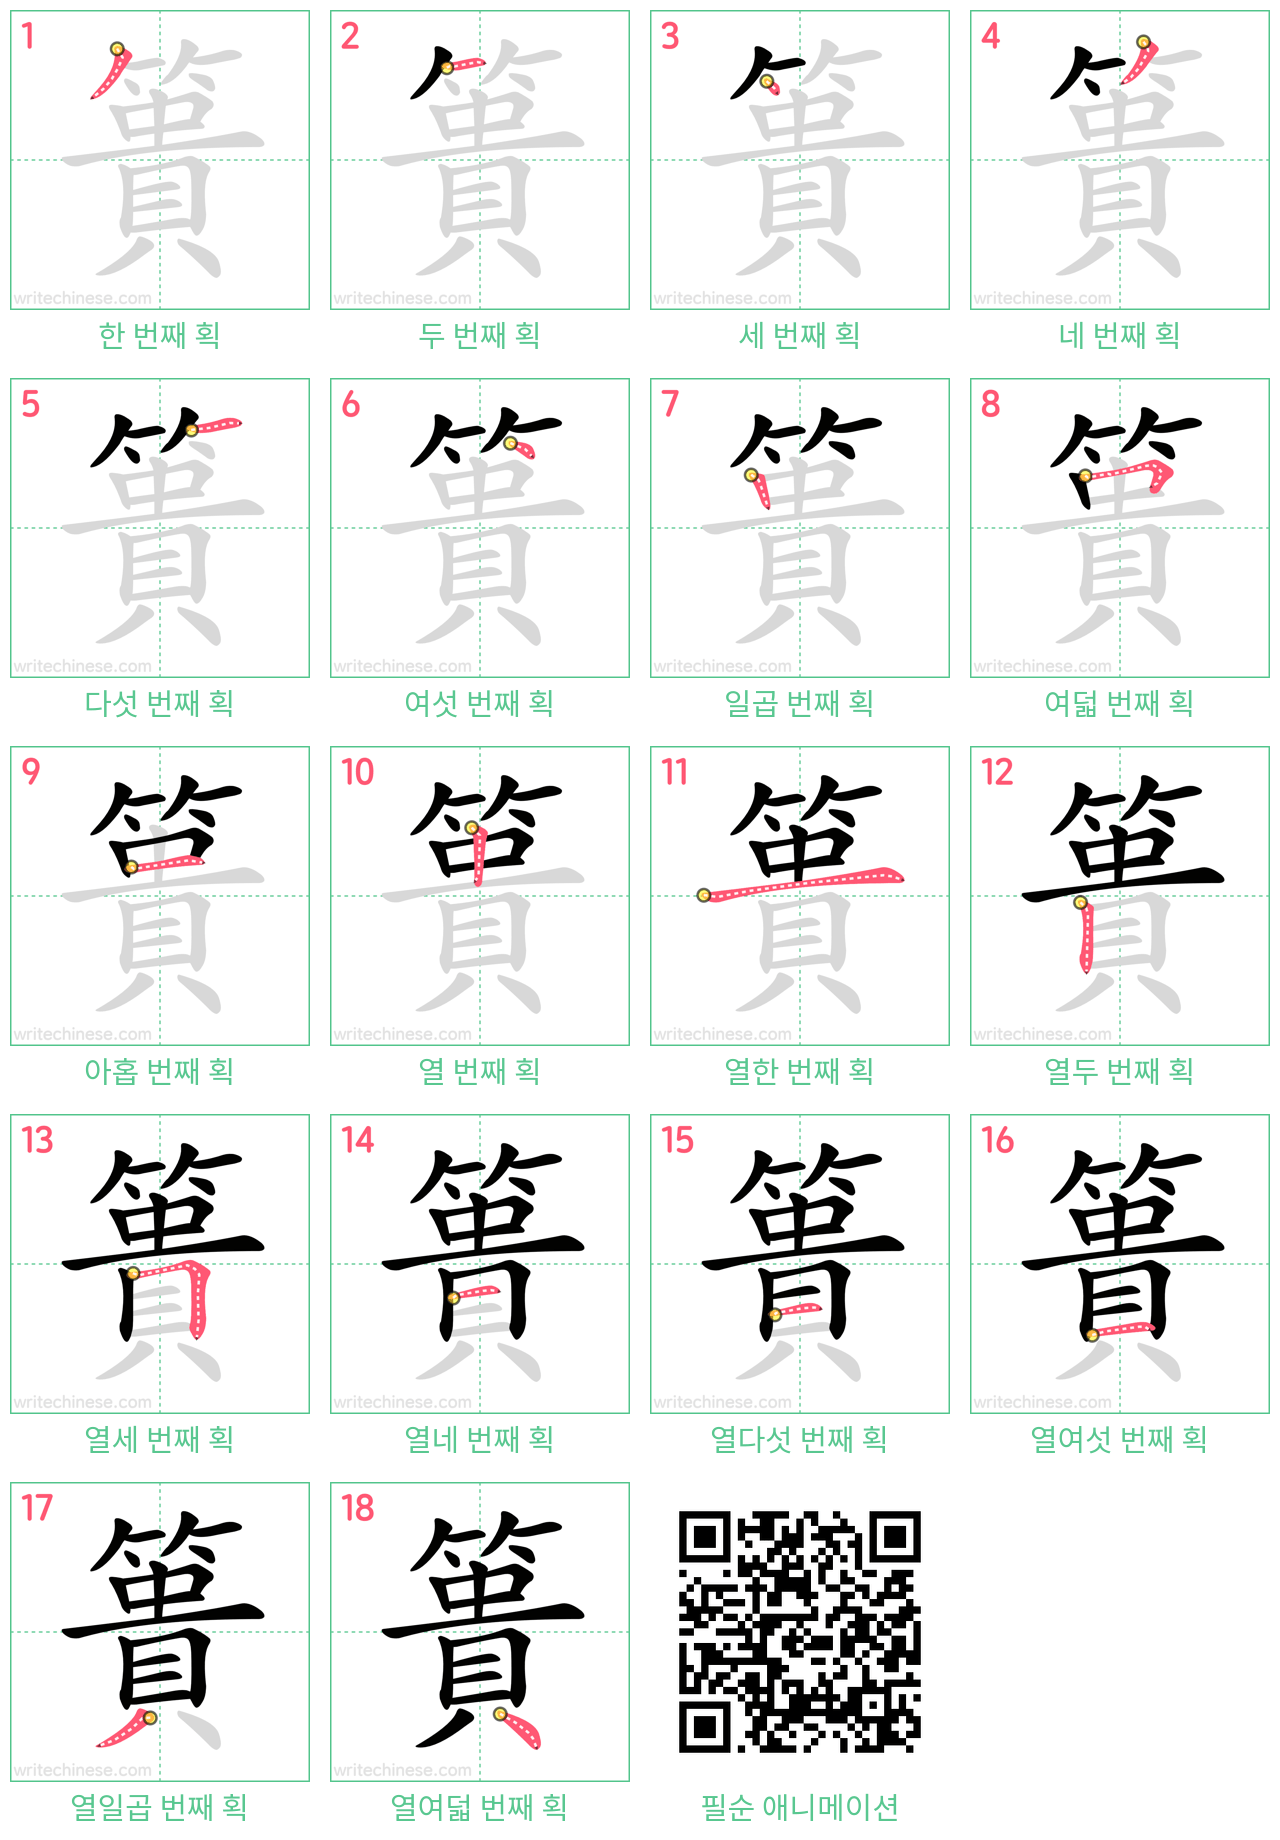 簣 step-by-step stroke order diagrams